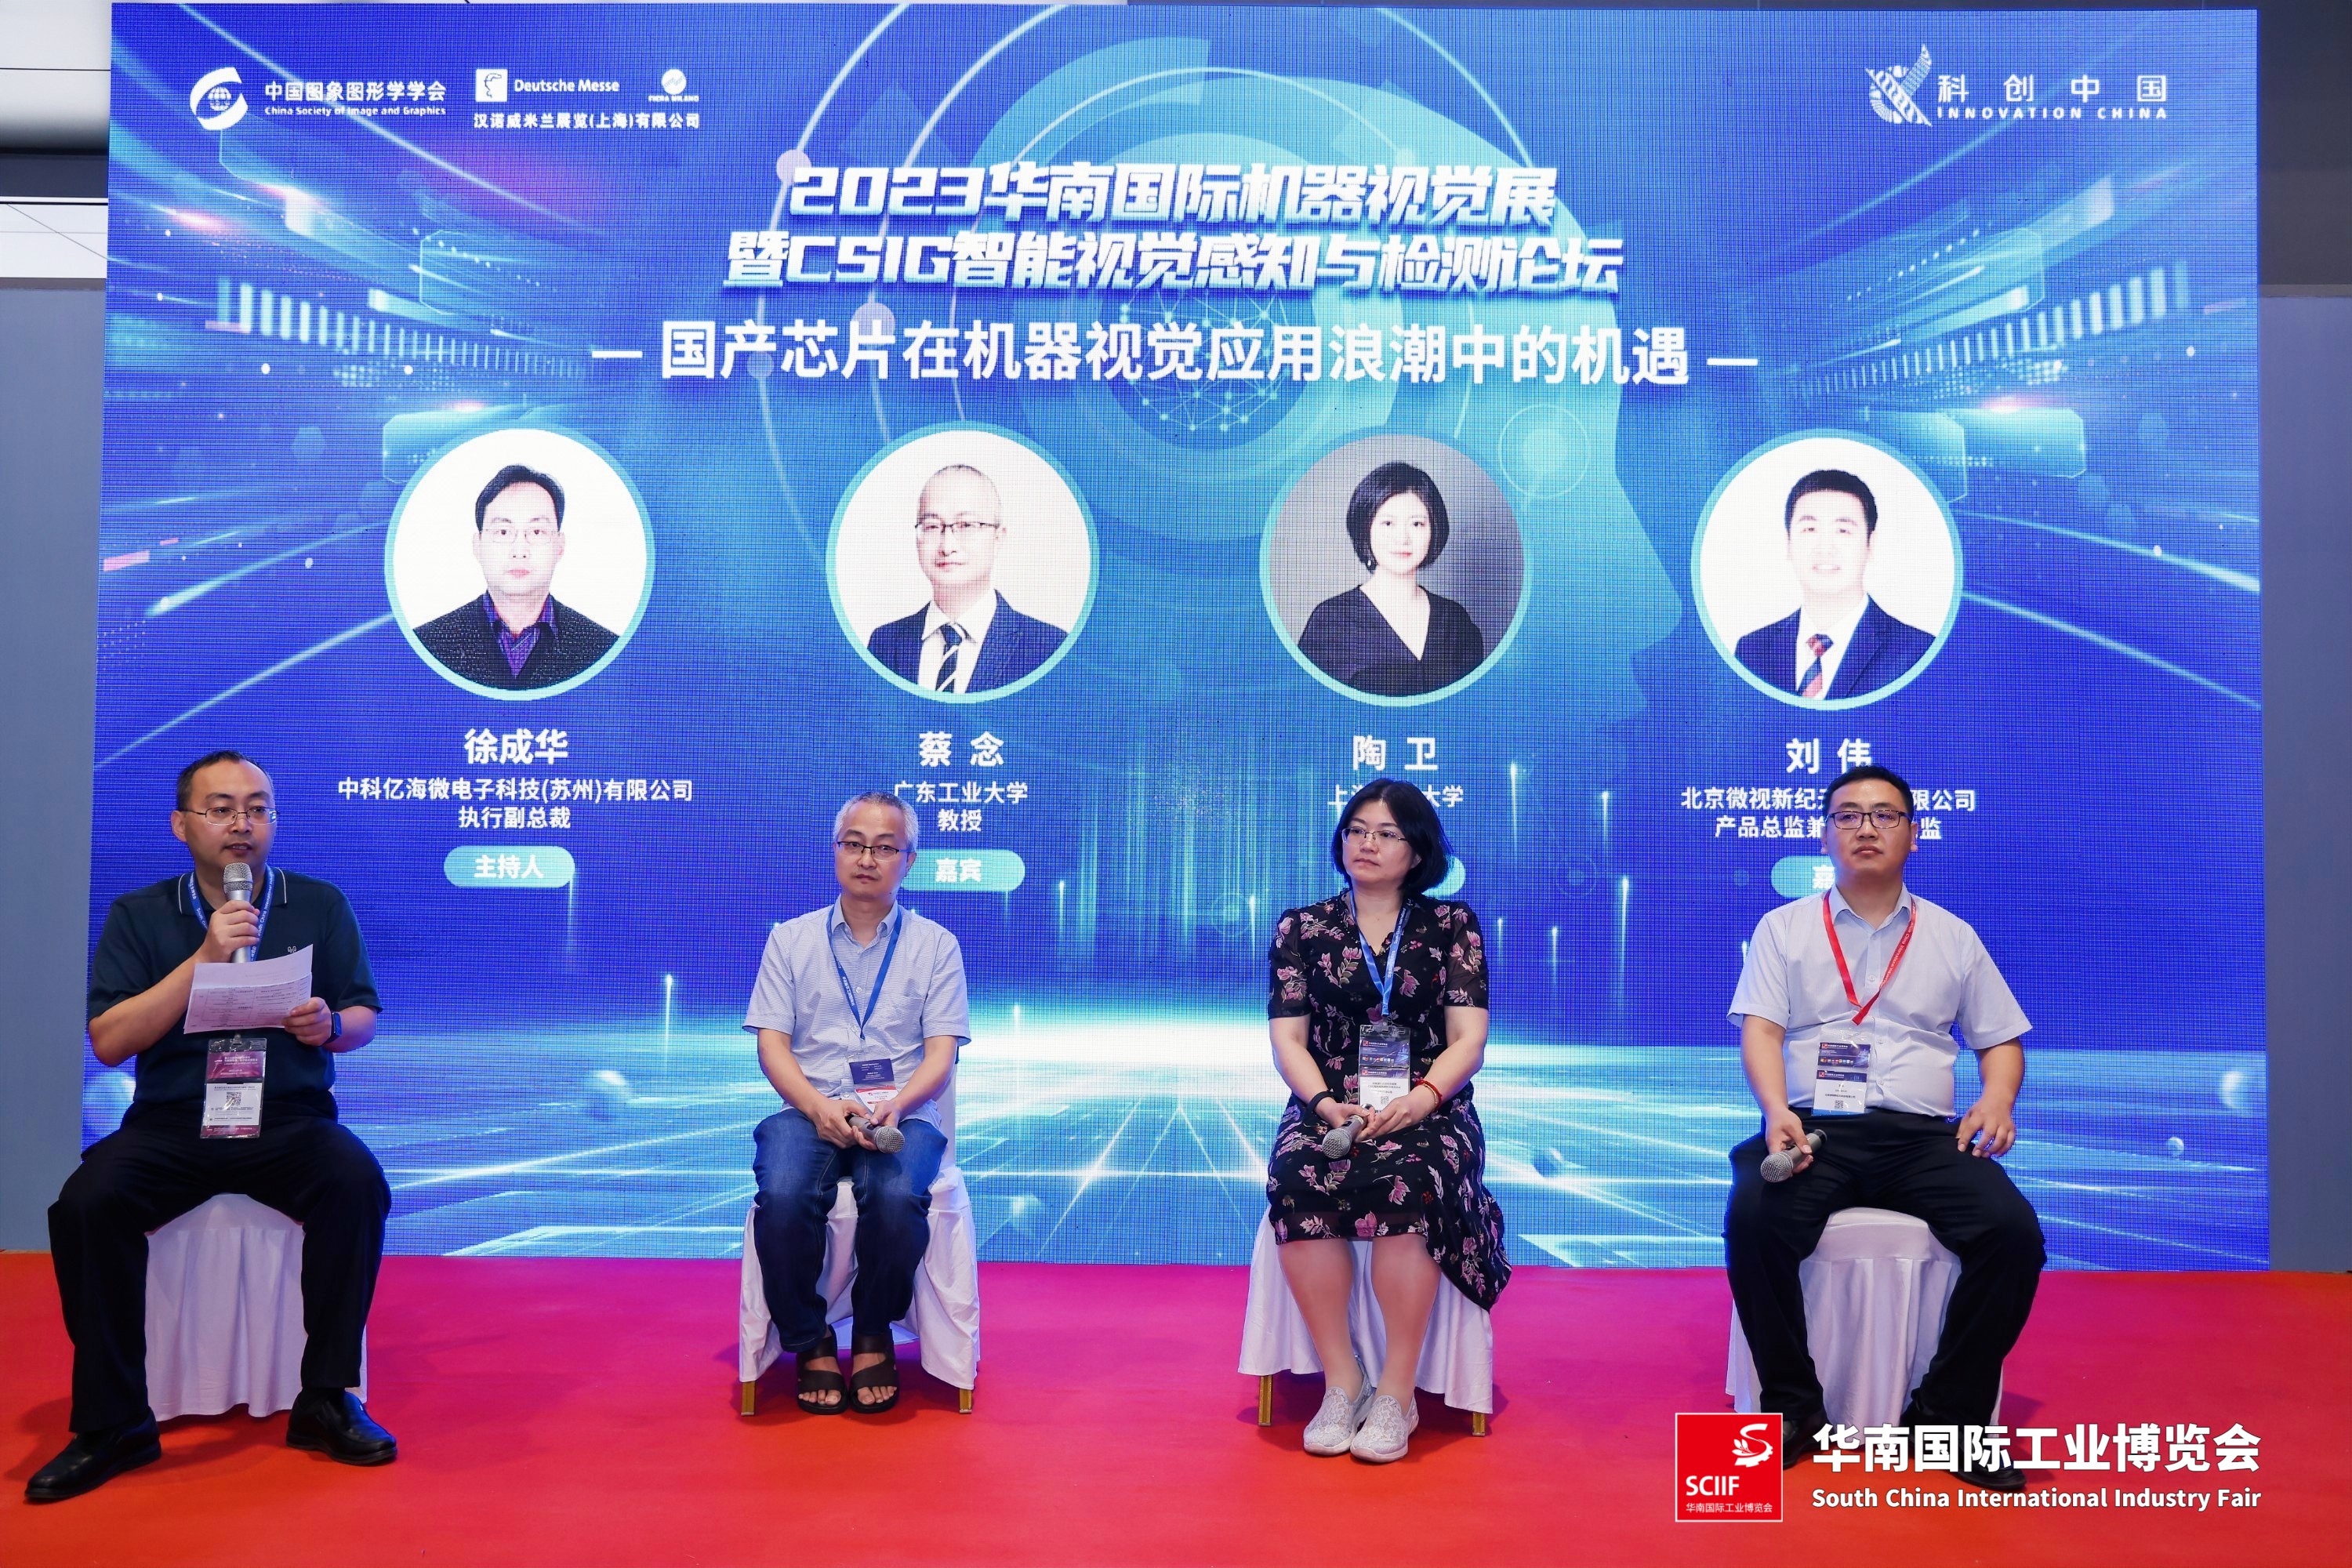 【微视展讯】华南国际工业博览会(SCIIF) 第二日 精彩不断